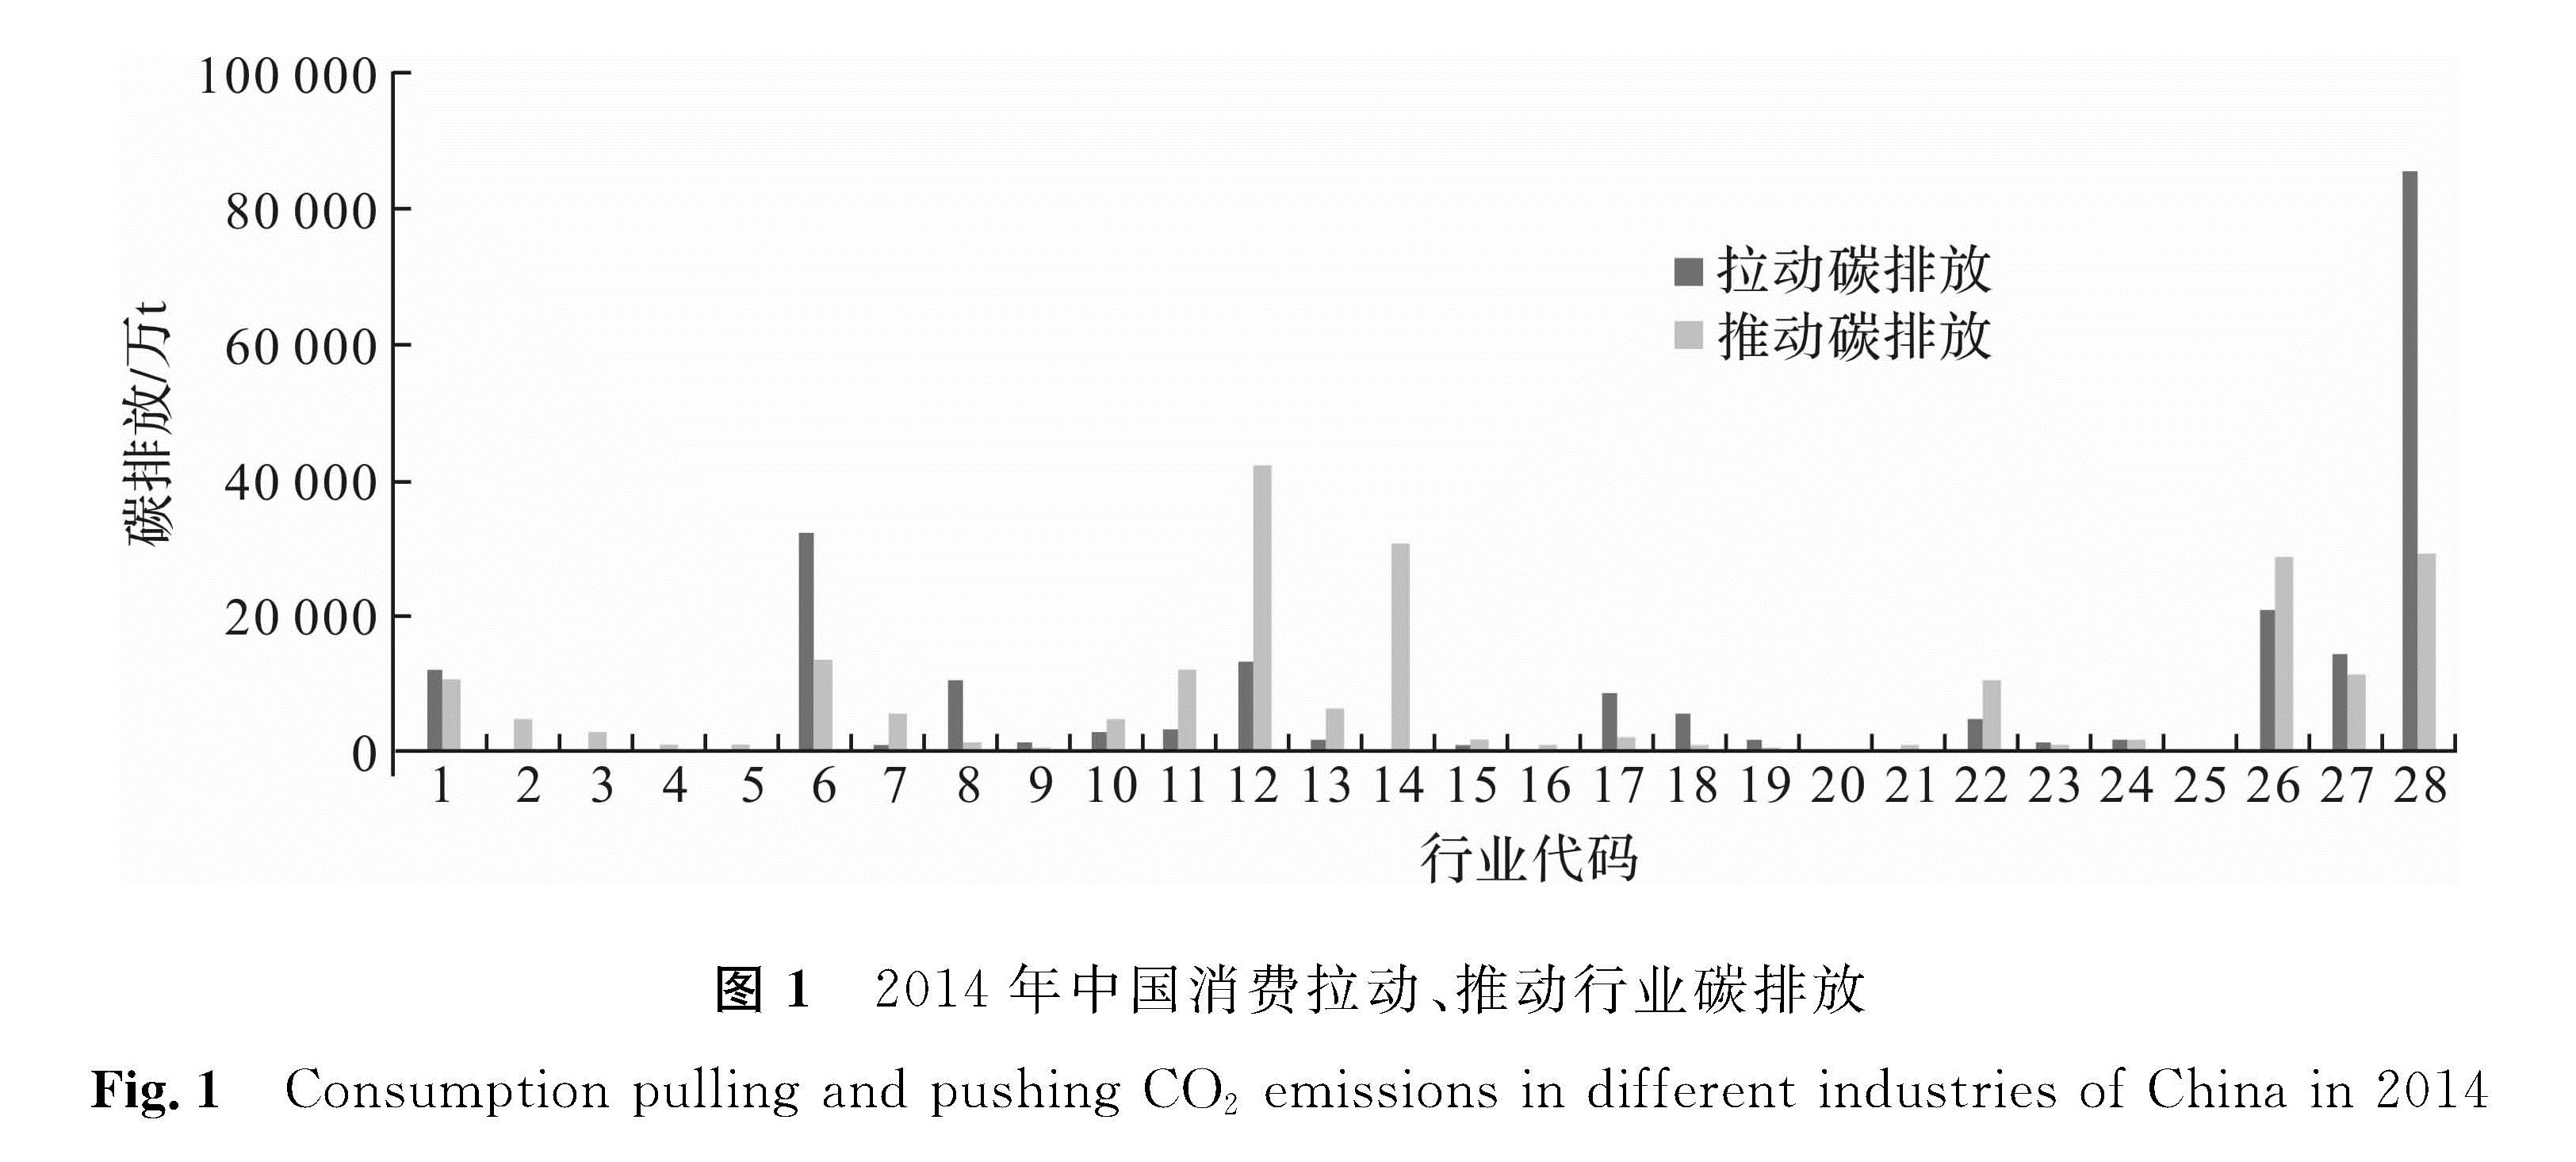 图1 2014年中国消费拉动、推动行业碳排放<br/>Fig.1 Consumption pulling and pushing CO2 emissions in different industries of China in 2014